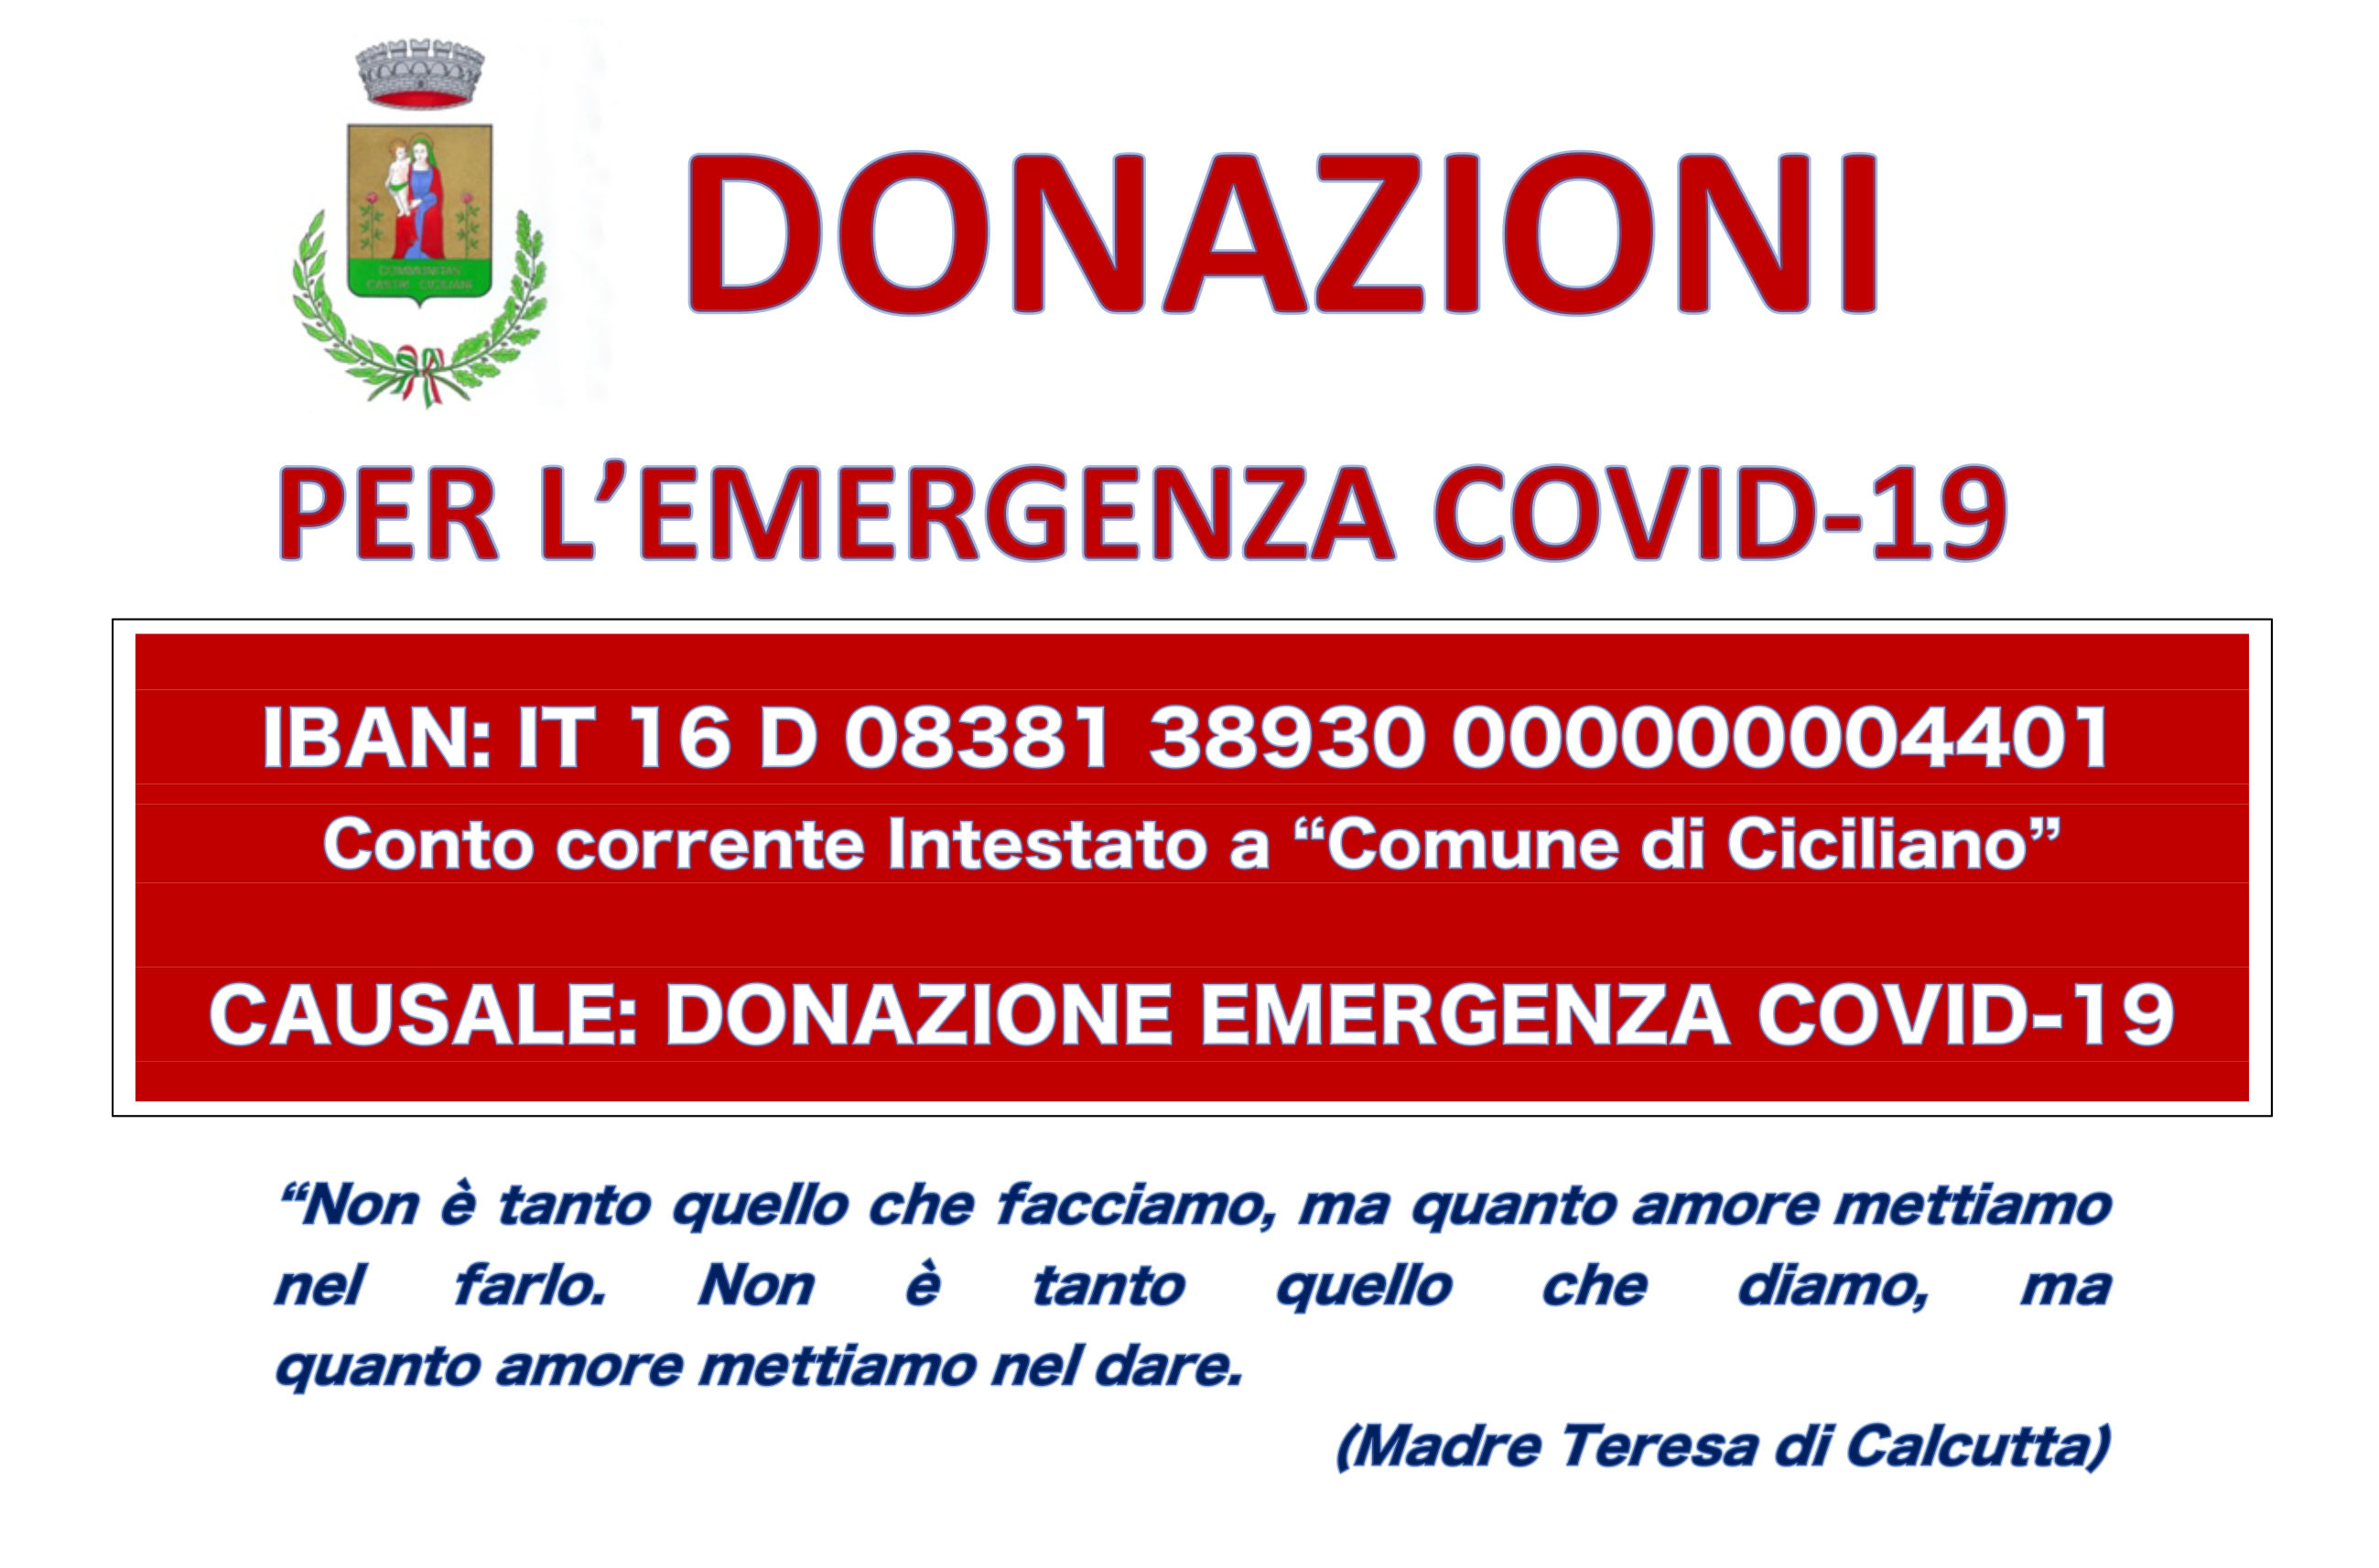 ATTIVATE LE DONAZIONI PER L'EMERGENZA COVID-19